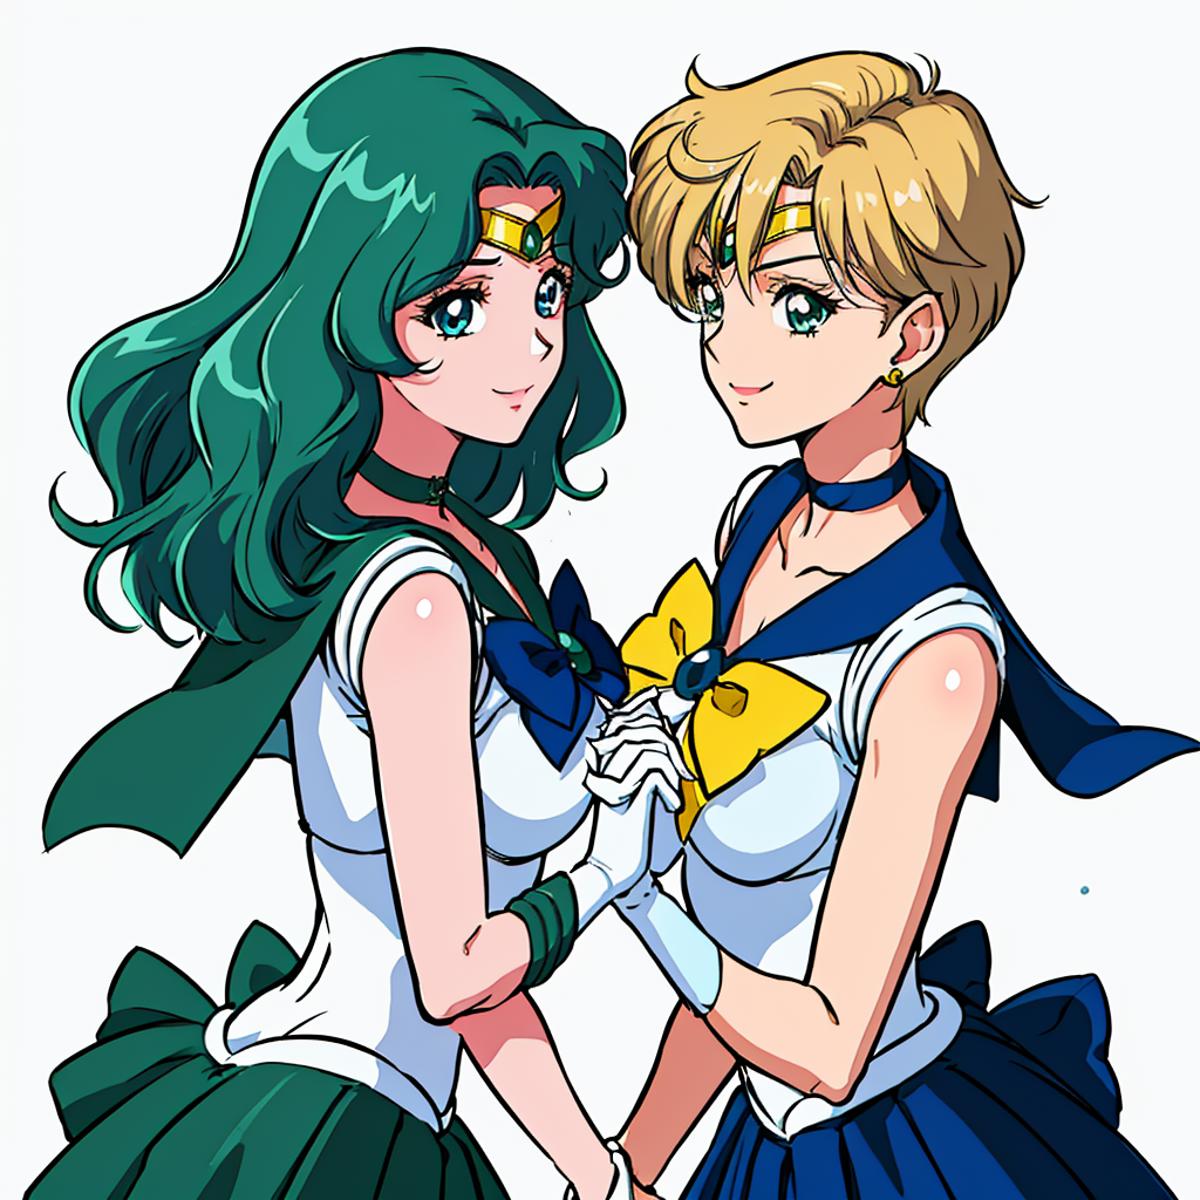 Haruka Tenou and Michiru Kaiou ( Sailor Uranus and Sailor Neptune Fanart ) - Sailor Moon image by jibunsagasinotabi